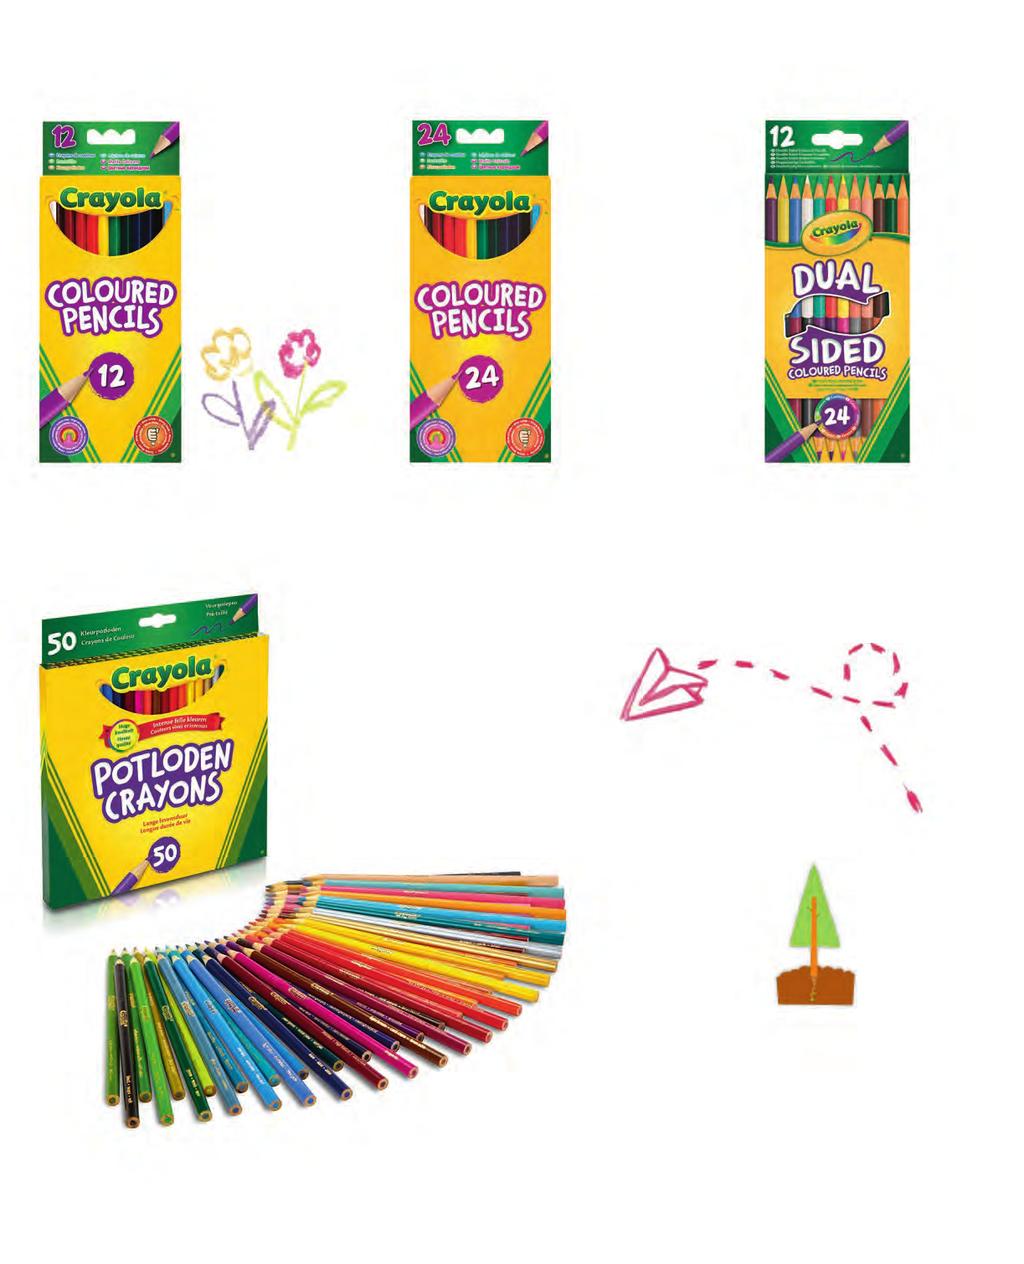 Crayola voorgeslepen kleurpotloden hebben felle en intense kleuren. Daarnaast hebben de kleurpotloden een easy- grip voor goede controle tijdens gebruik.